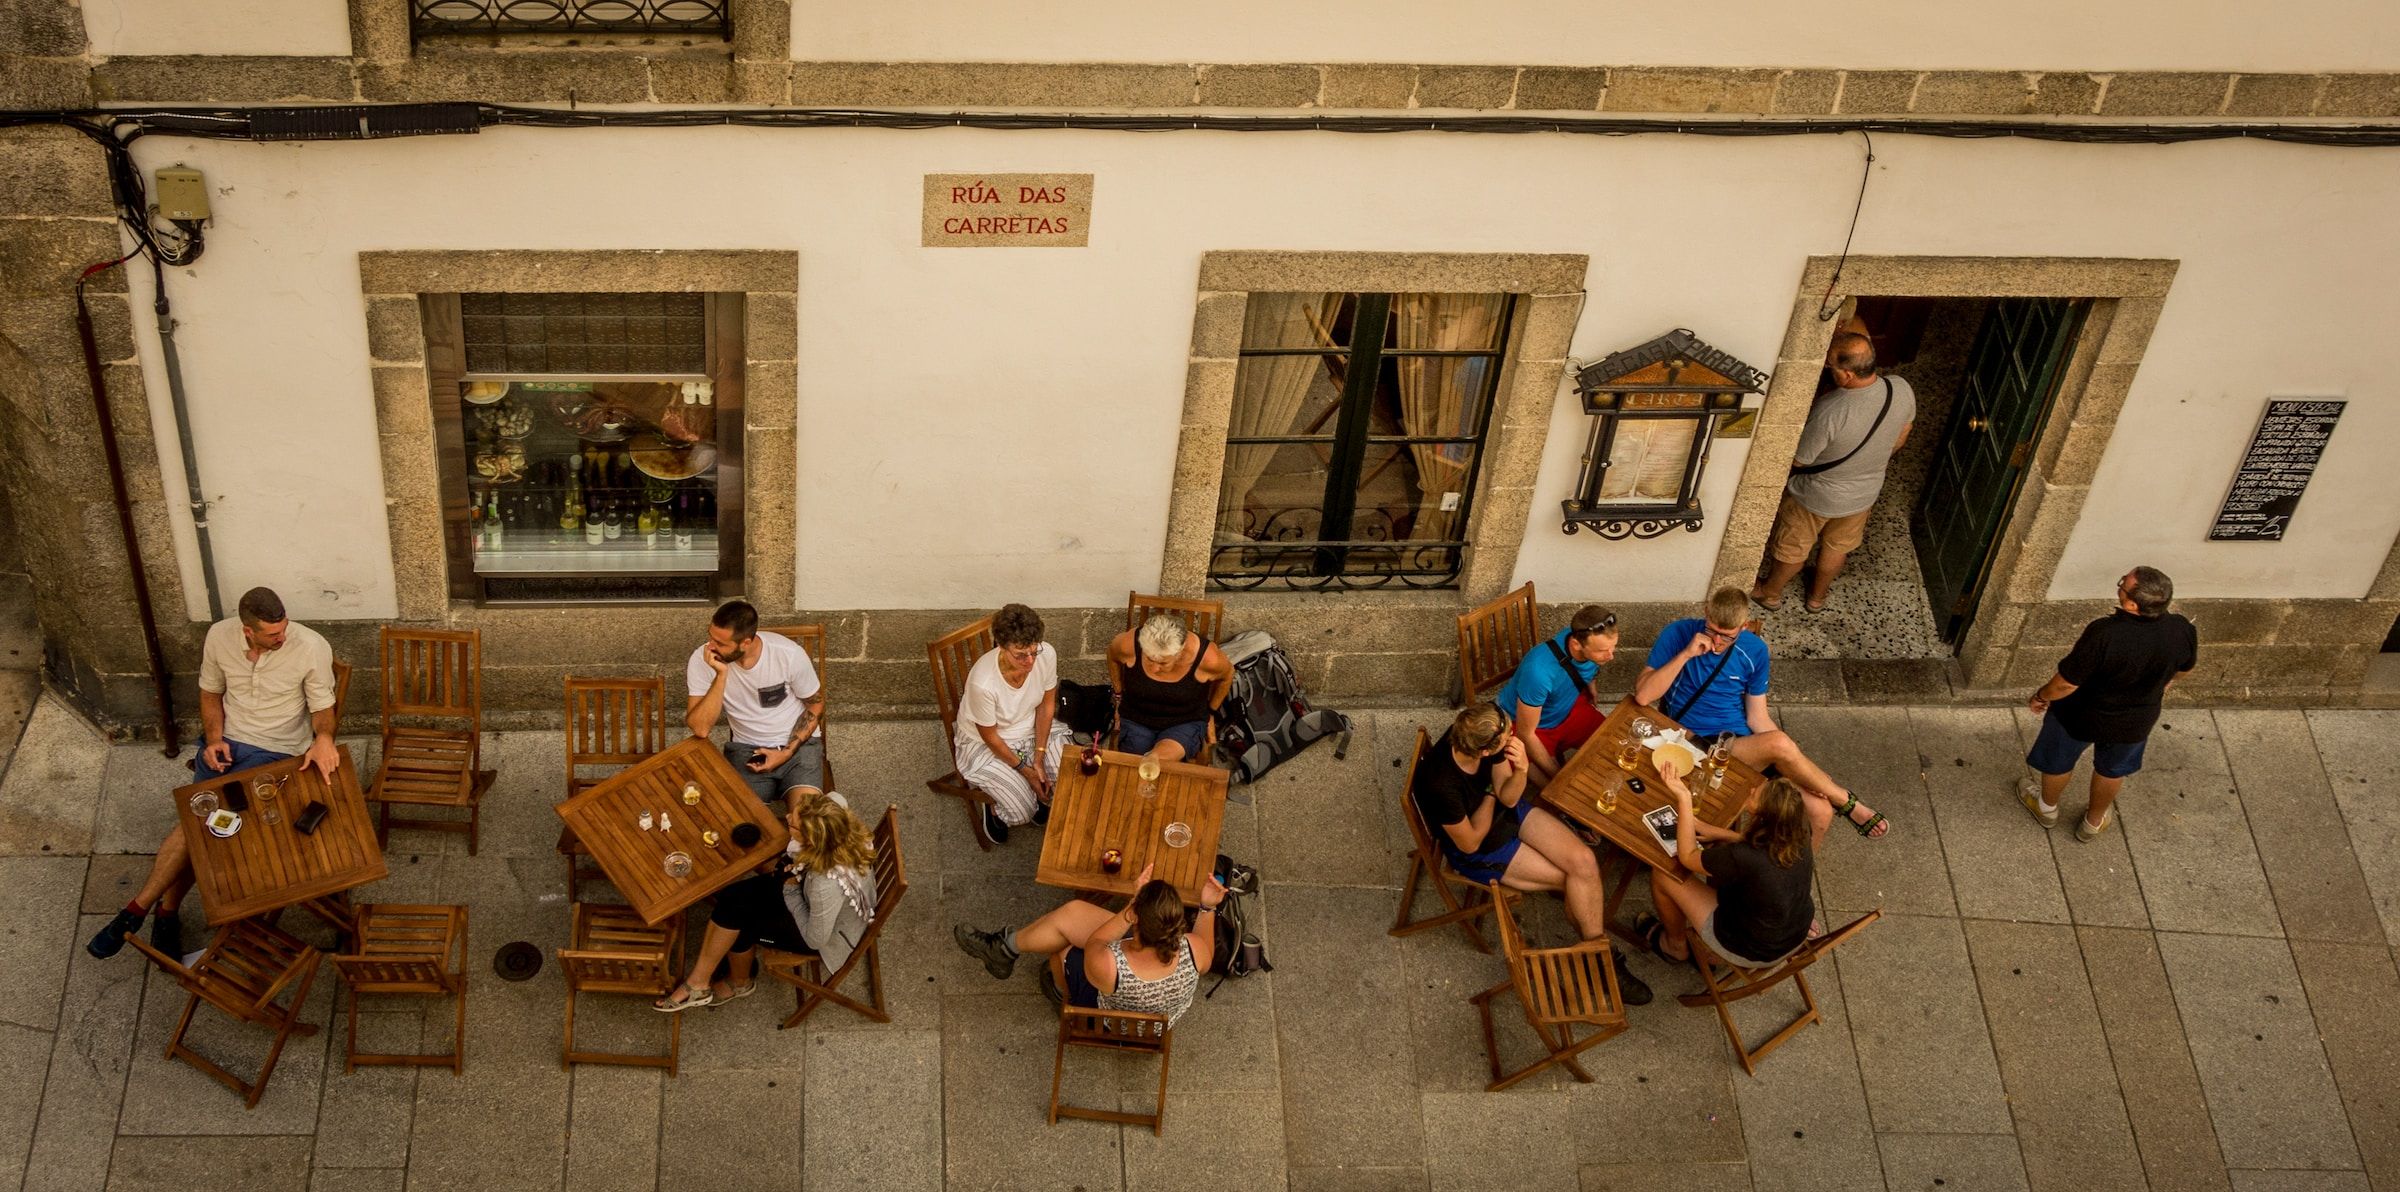 Cafe in Santiago de Compostela